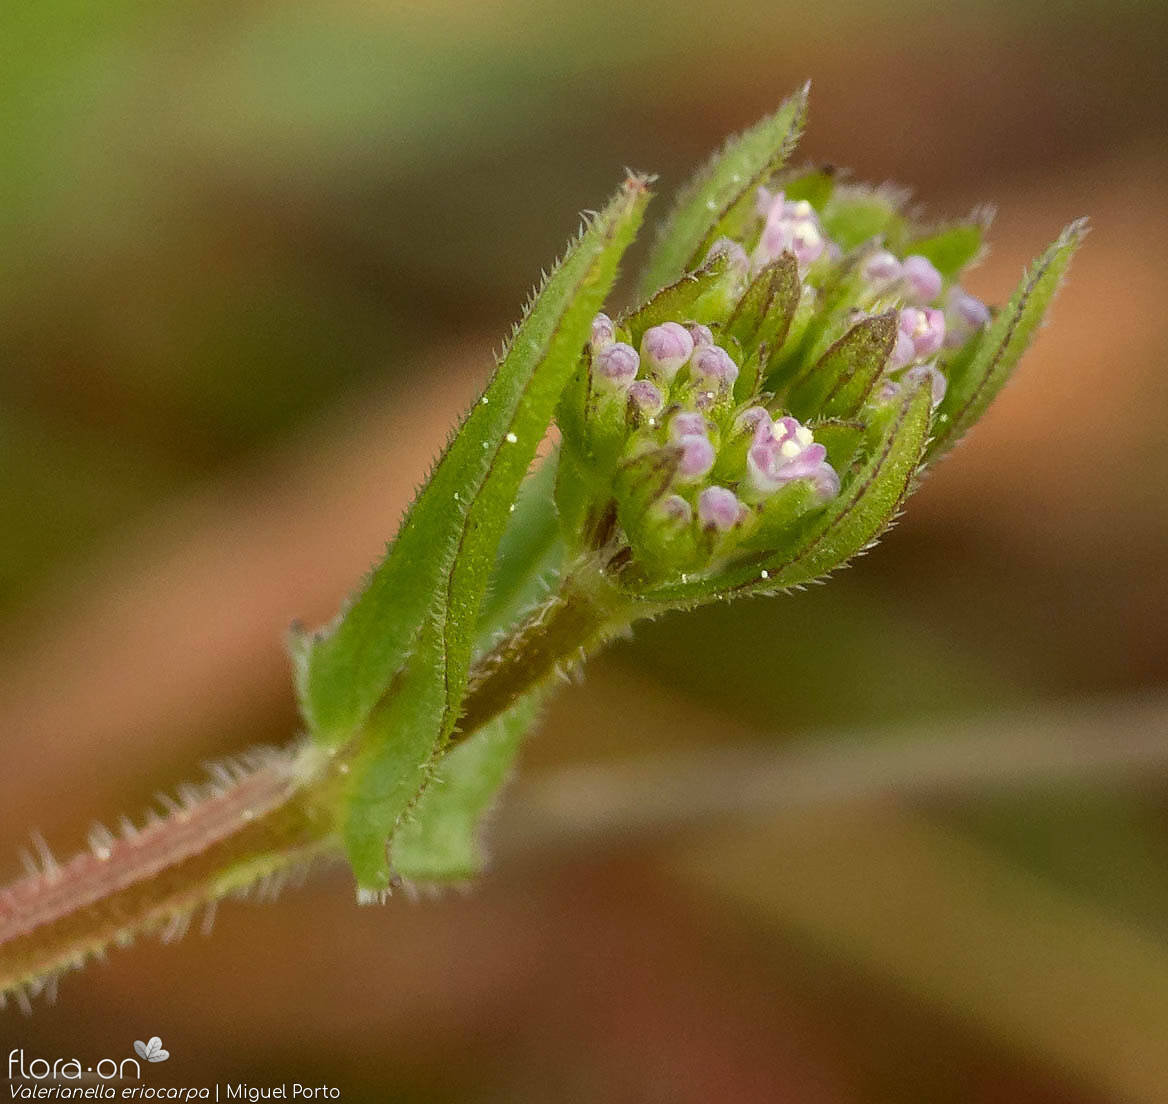 Valerianella eriocarpa - Flor (geral) | Miguel Porto; CC BY-NC 4.0